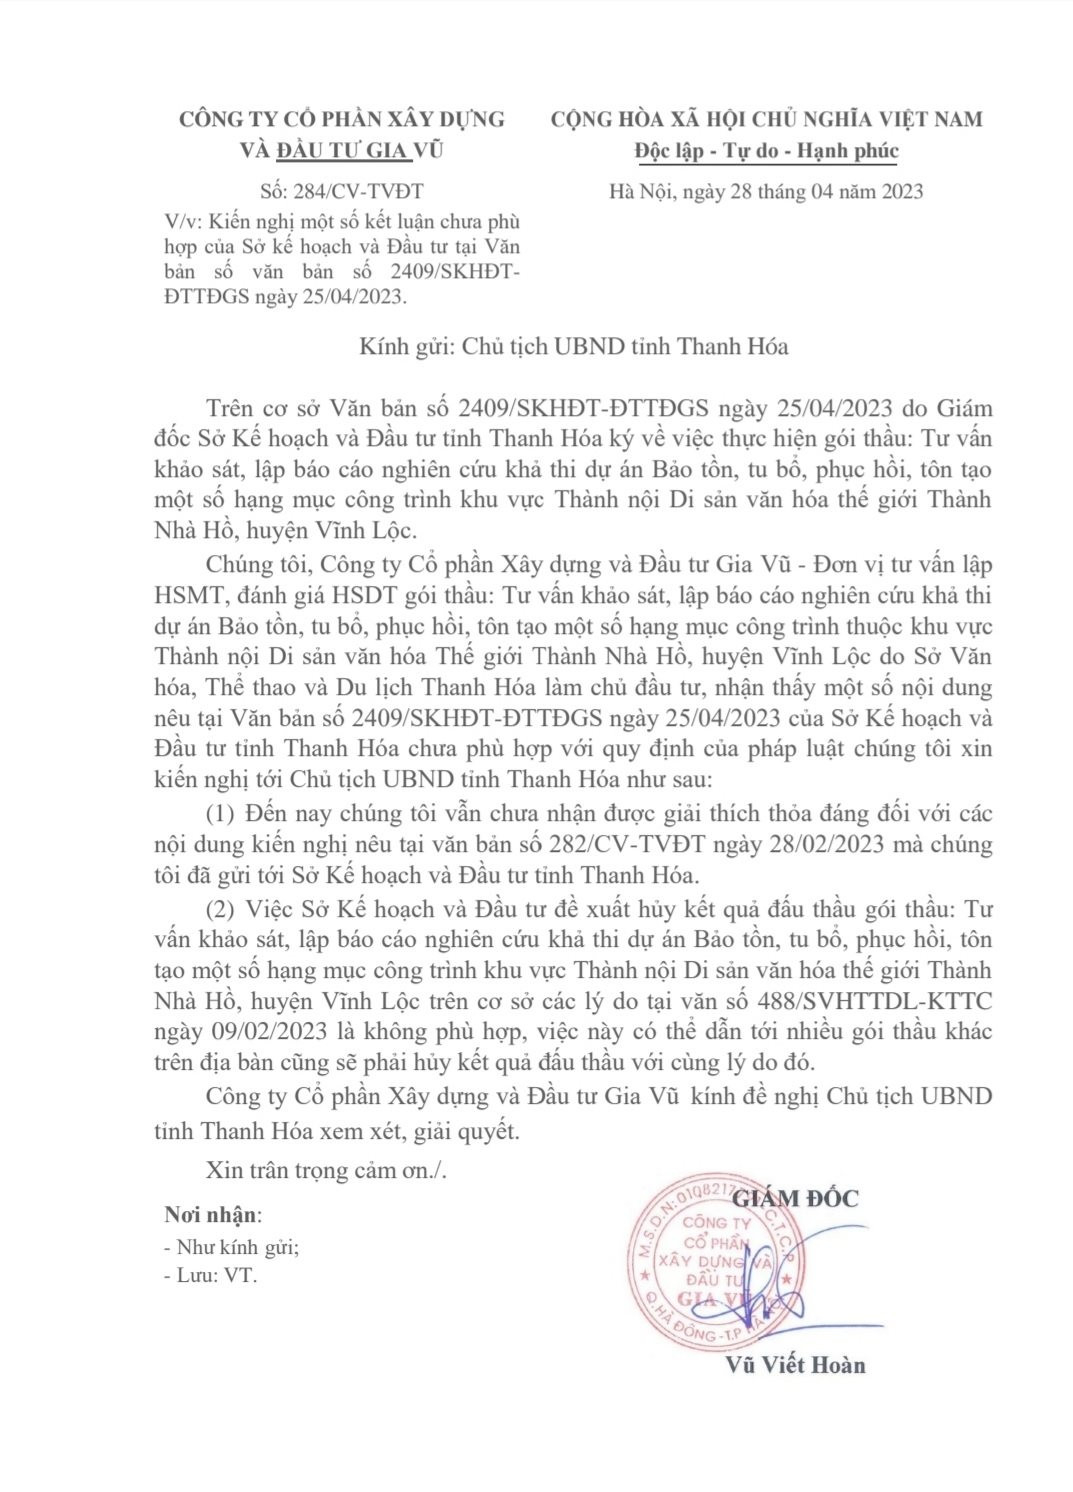 Công văn số 284/CV-TVĐT ngày 28/02/2023 của Cty Gia Vũ gửi Chủ tịch UBND tỉnh Thanh Hóa.